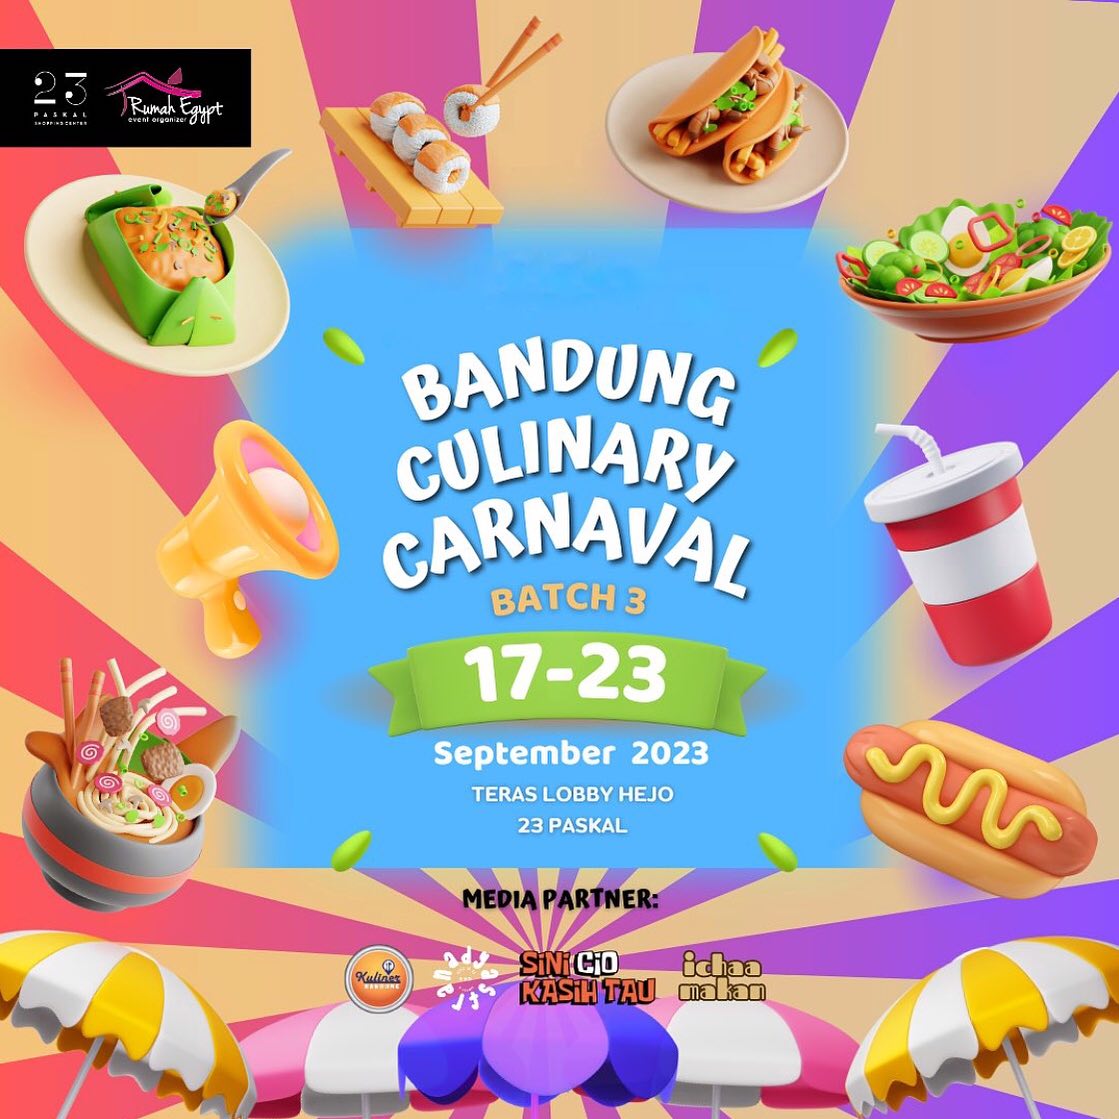 Bandung Culinary Carnaval